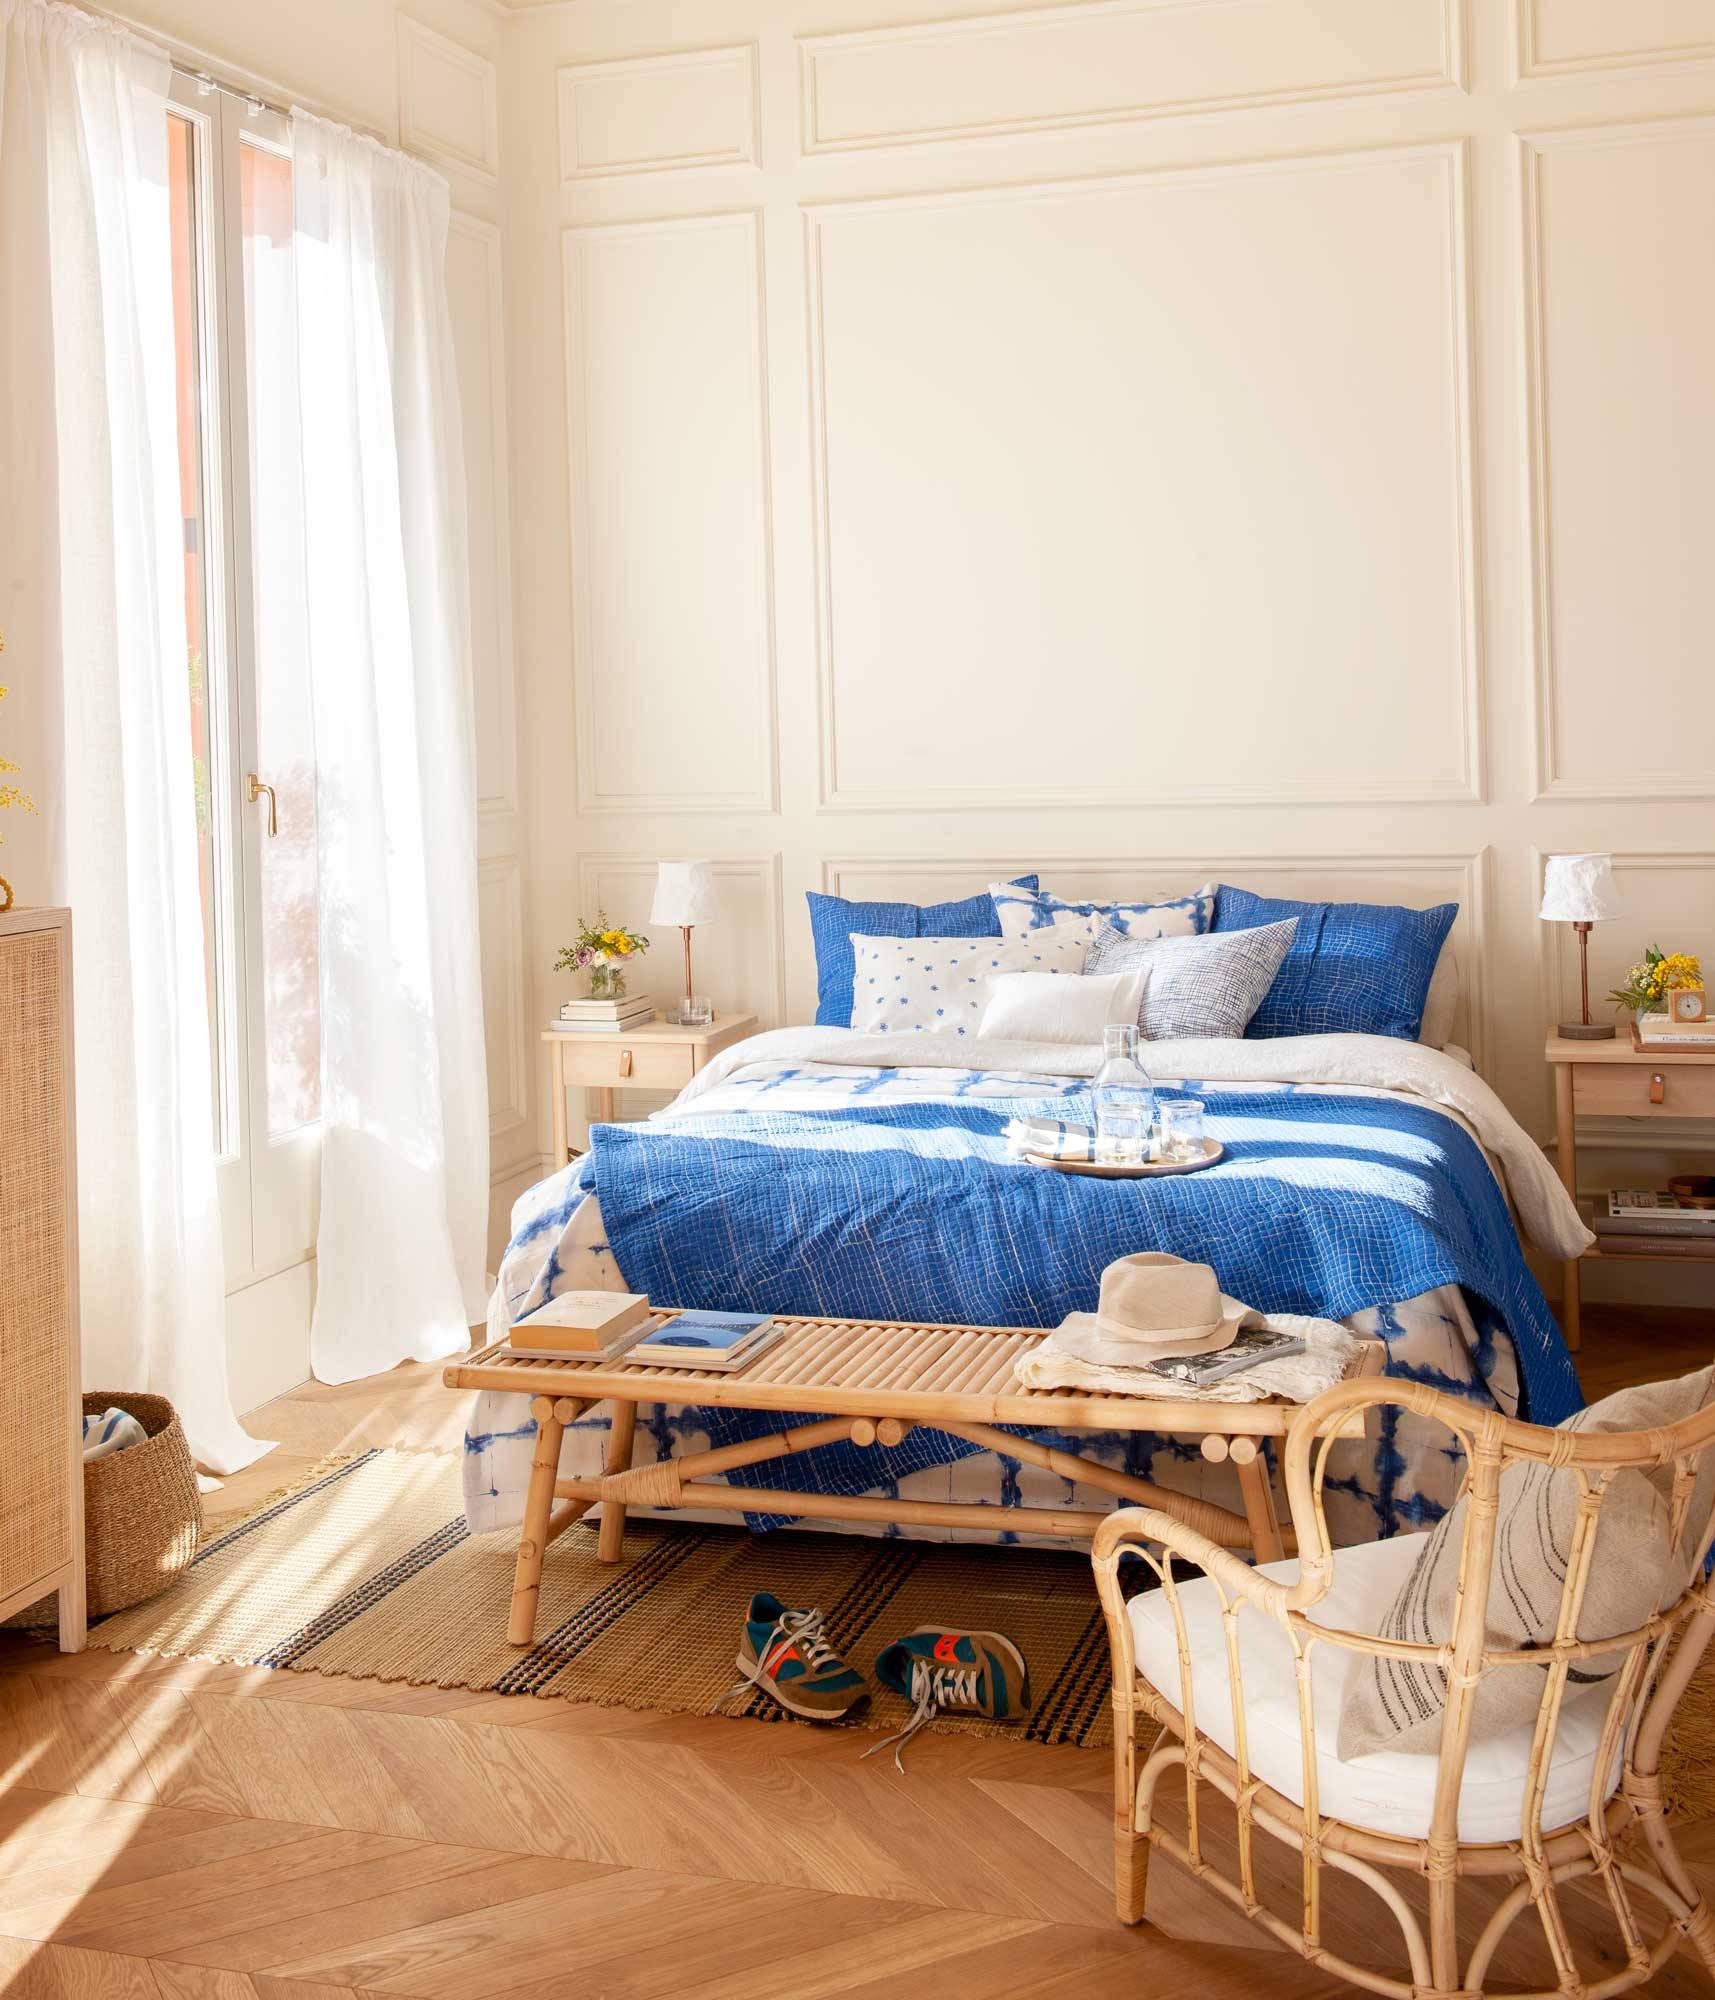 dormitorio-con-molduras-en-la-pared-muebles-madera-y-fibra-y-ropa-de-cama-azul-00501574 O